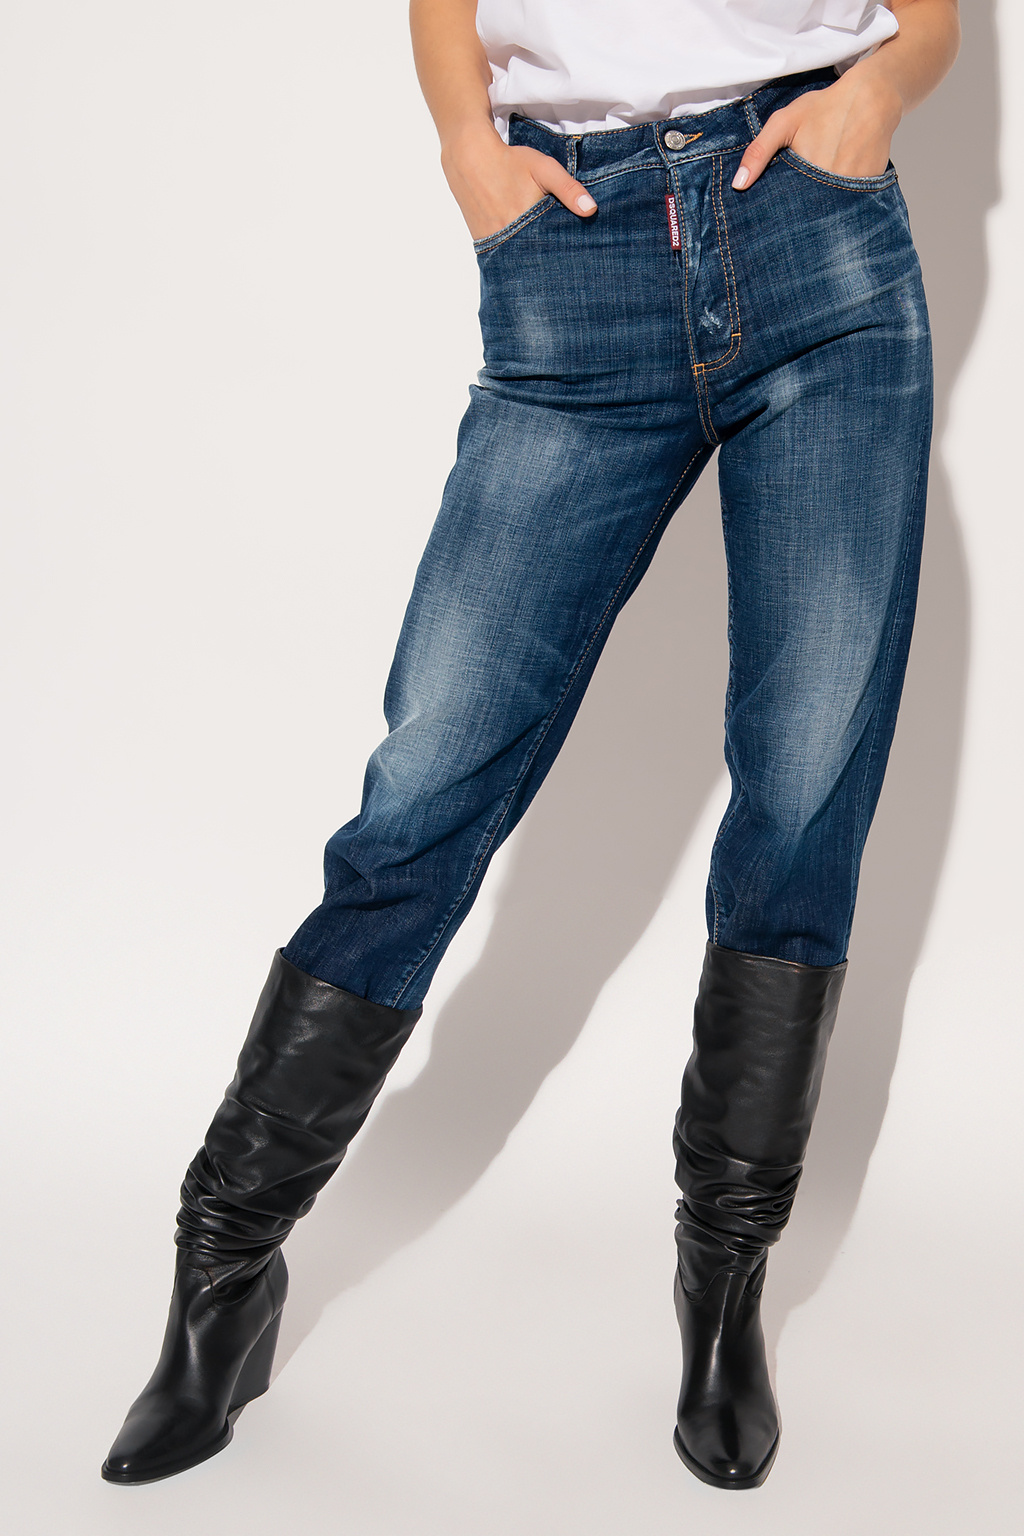 Dsquared2 'Boston' jeans | Women's Clothing | Vitkac